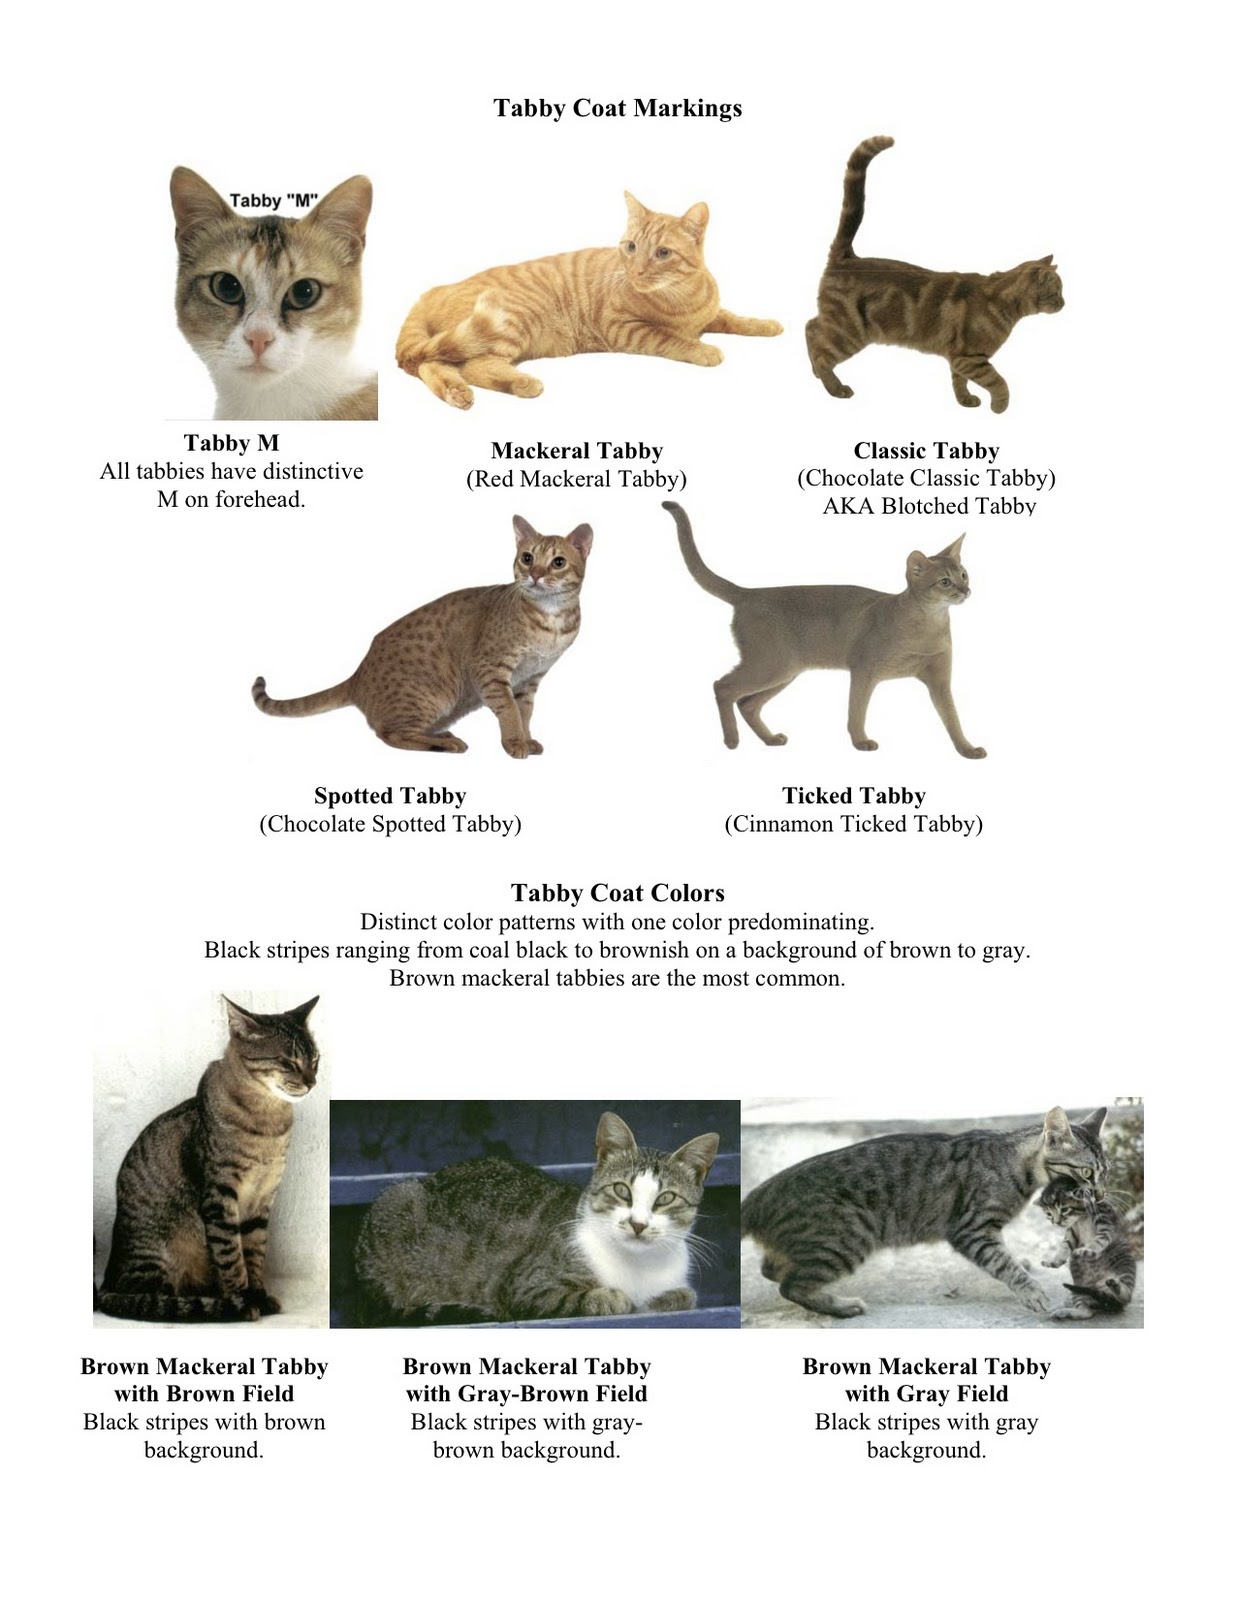 Породы домашних кошек с фотографиями и названиями пород